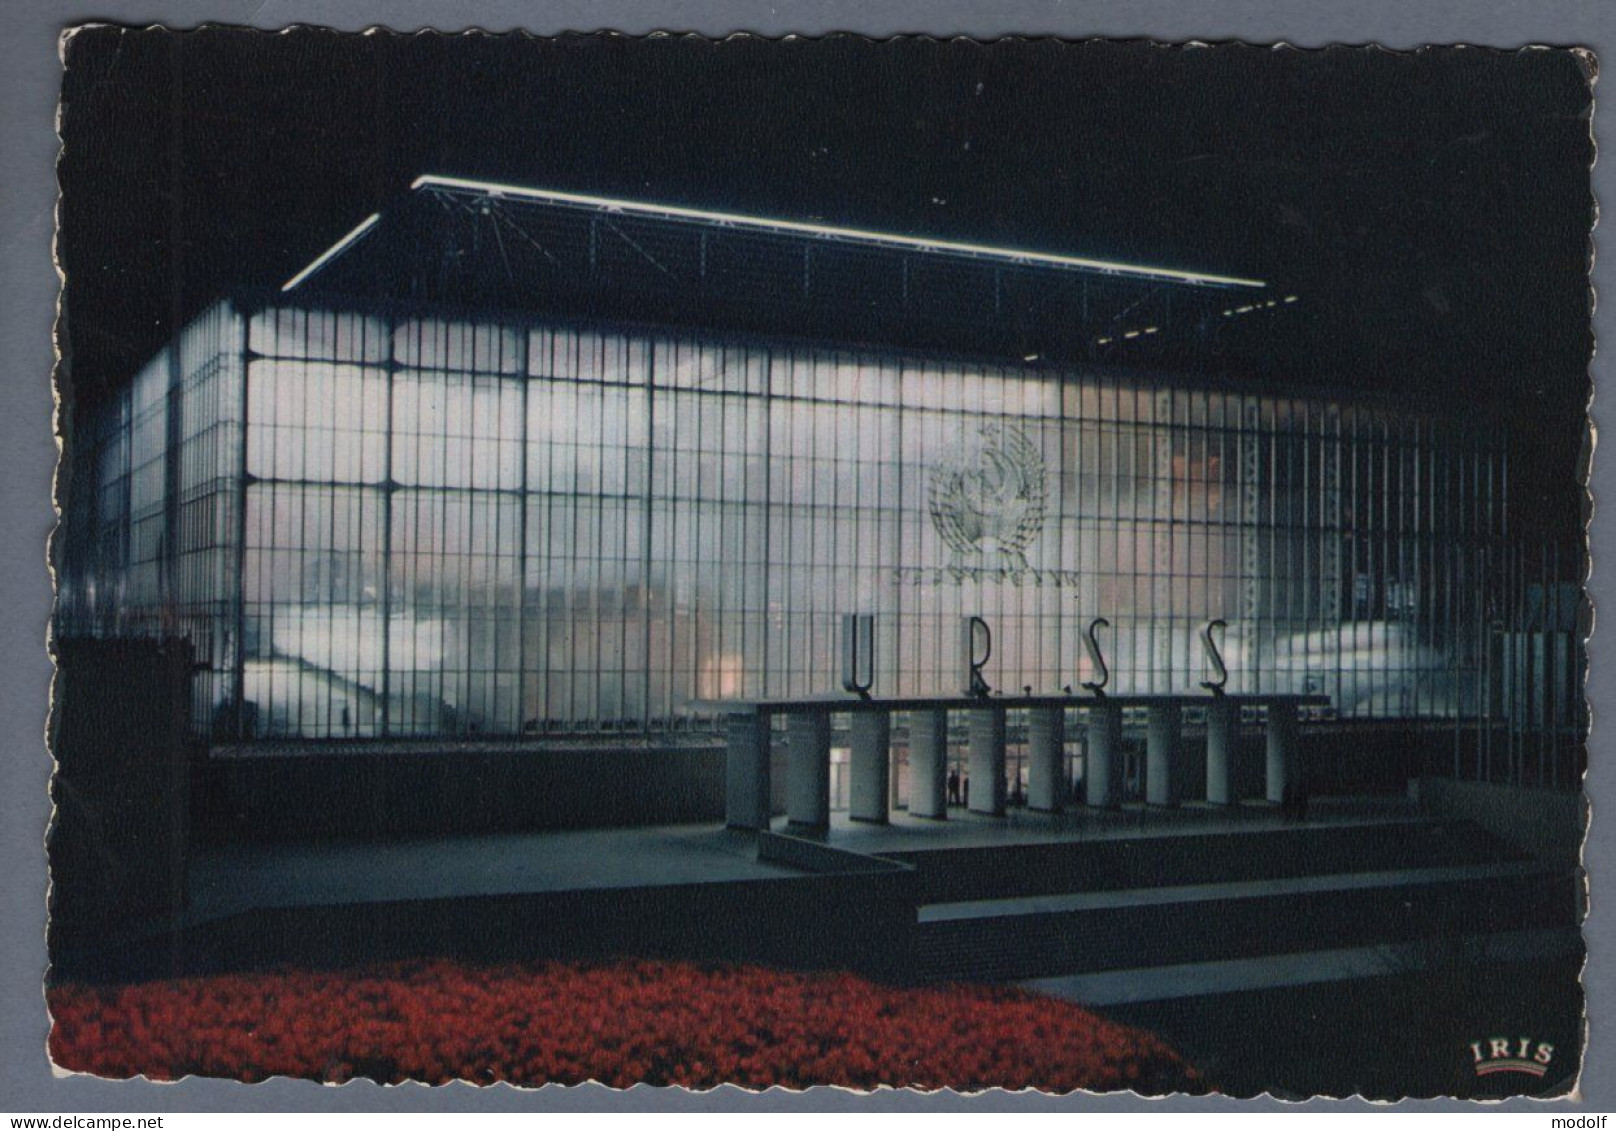 CPSM - Belgique - Exposition Universelle De Bruxelles 1958 - Pavillon De L'U.R.S.S. - Vue Nocturne - Non Circulée - Expositions Universelles